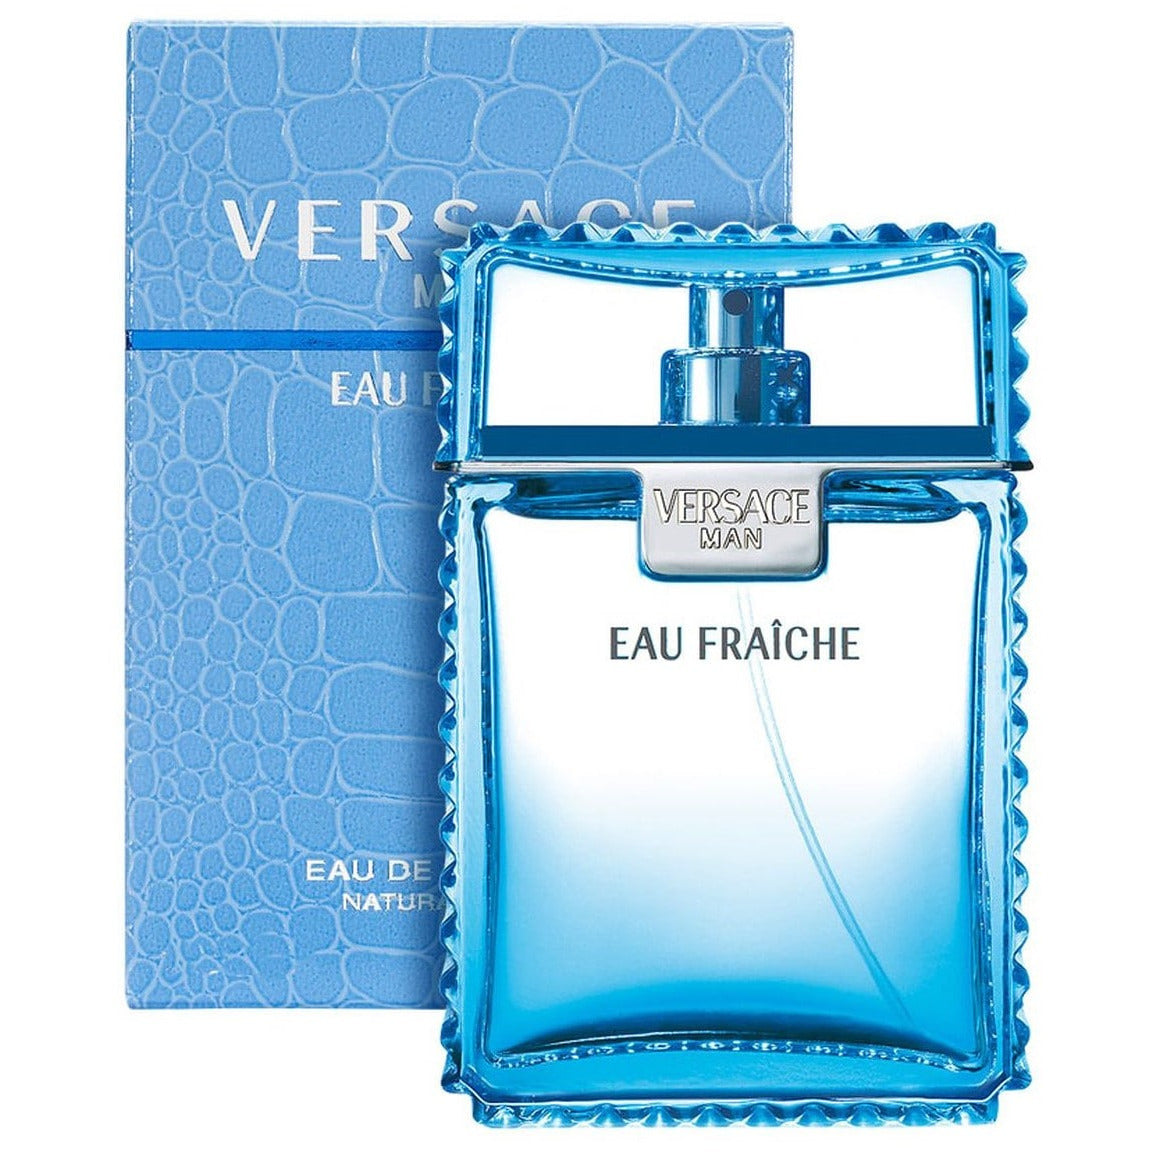    Perfume-Versace-Eau-Fraiche